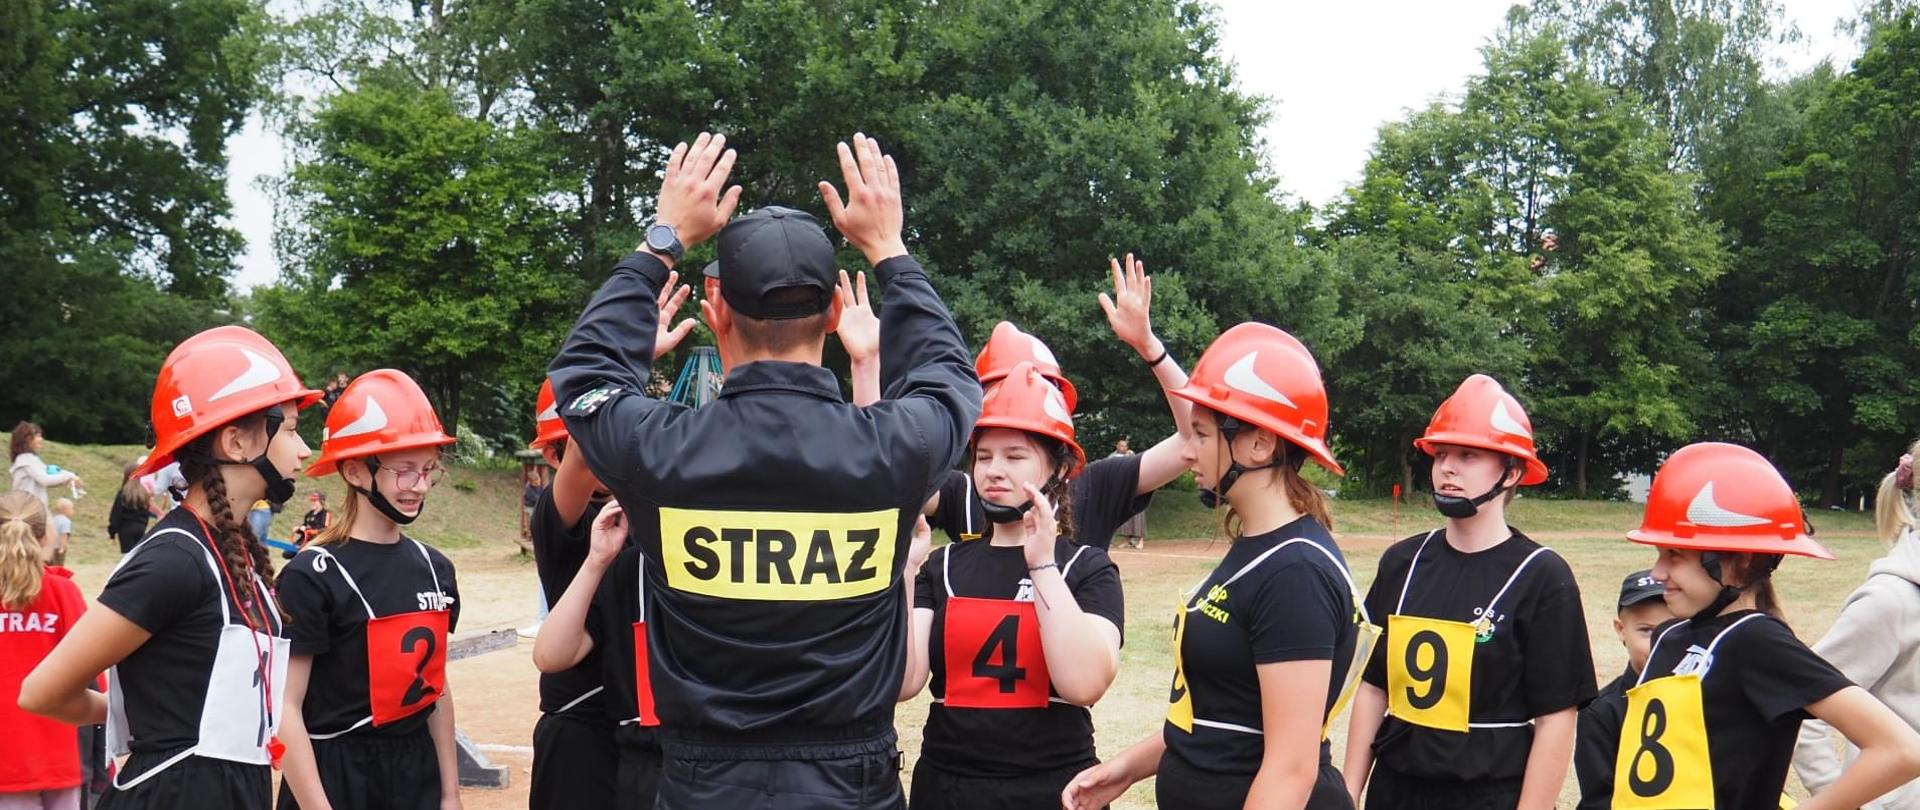 Członkowie Młodzieżowej Drużyny Pożarniczej przybijają piątki ze strażakiem OSP.